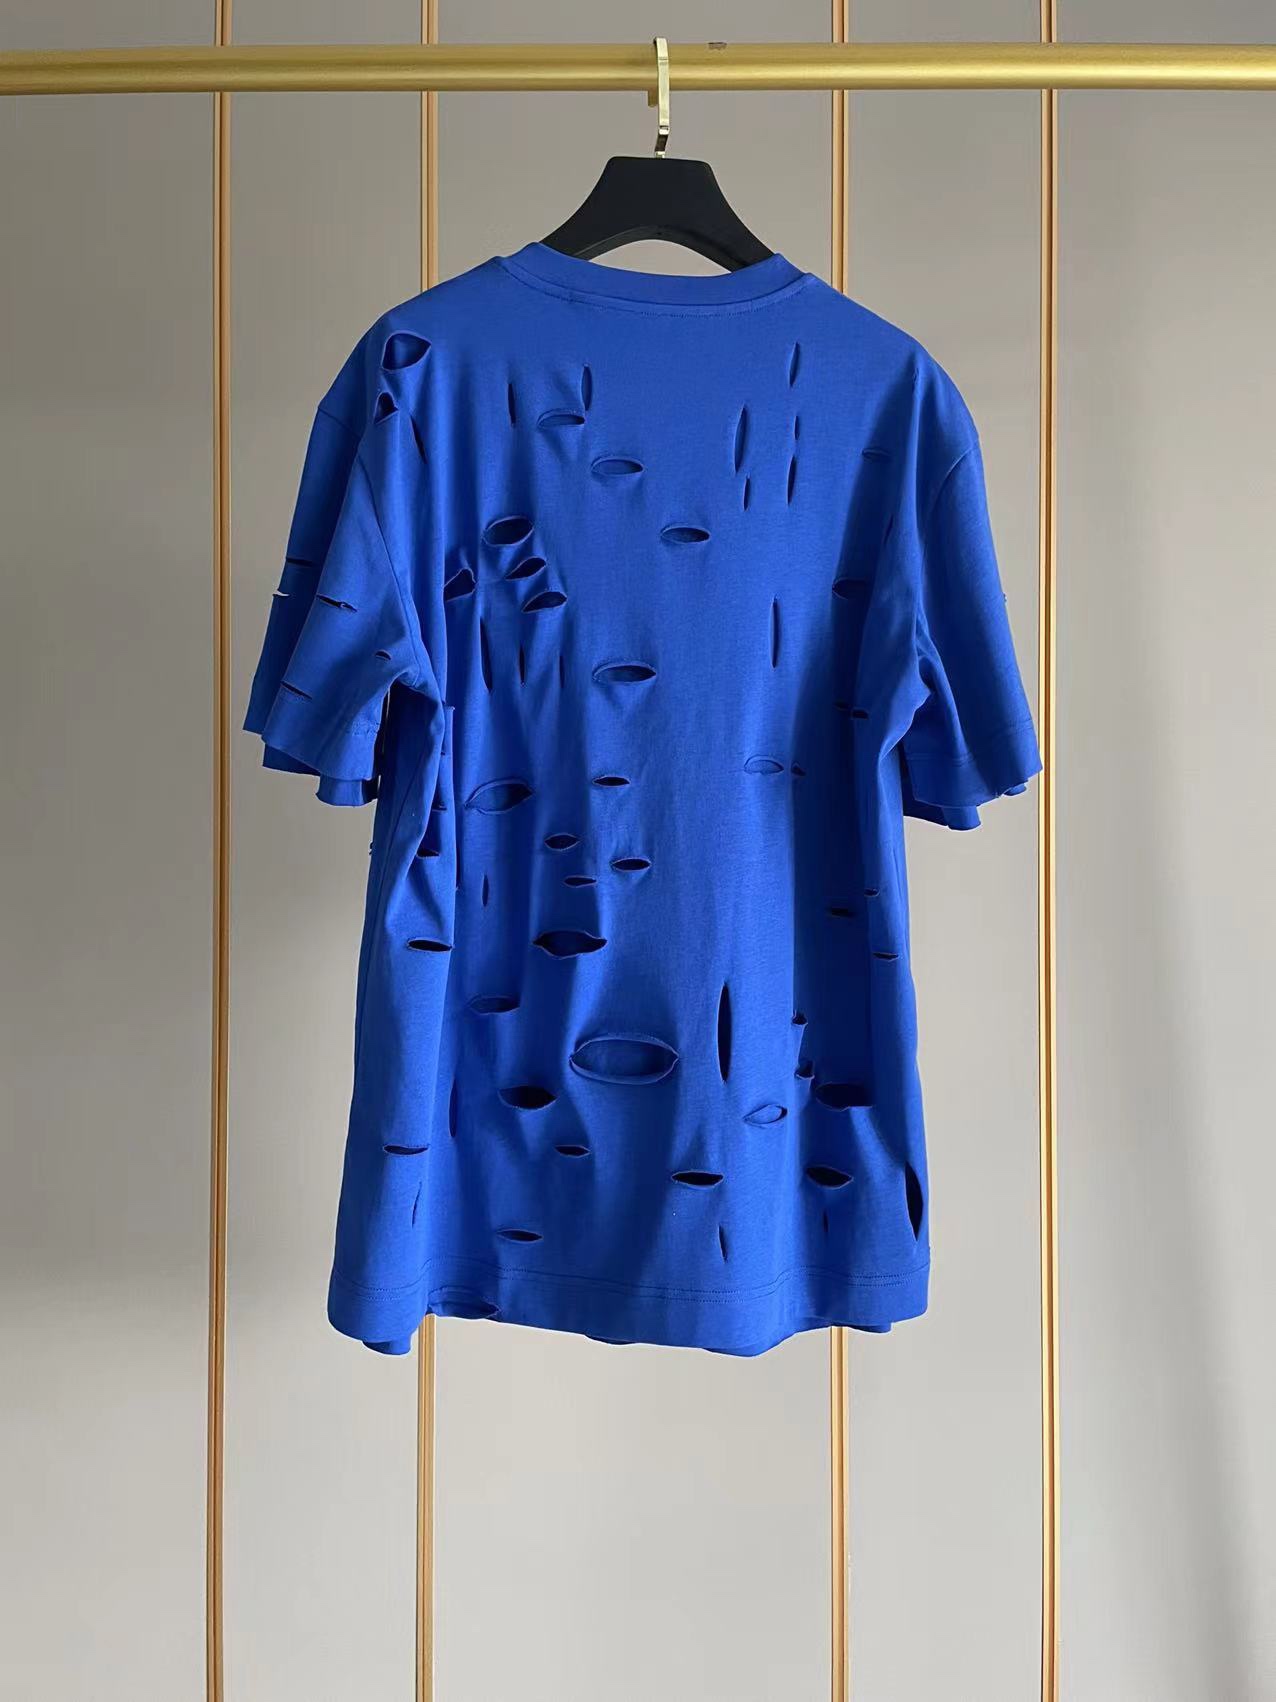 ジバンシートップススーパーコピー 純綿 Tシャツ 半袖 シンプル ダメージ加工のデザイン 5色可選 ブルー_2